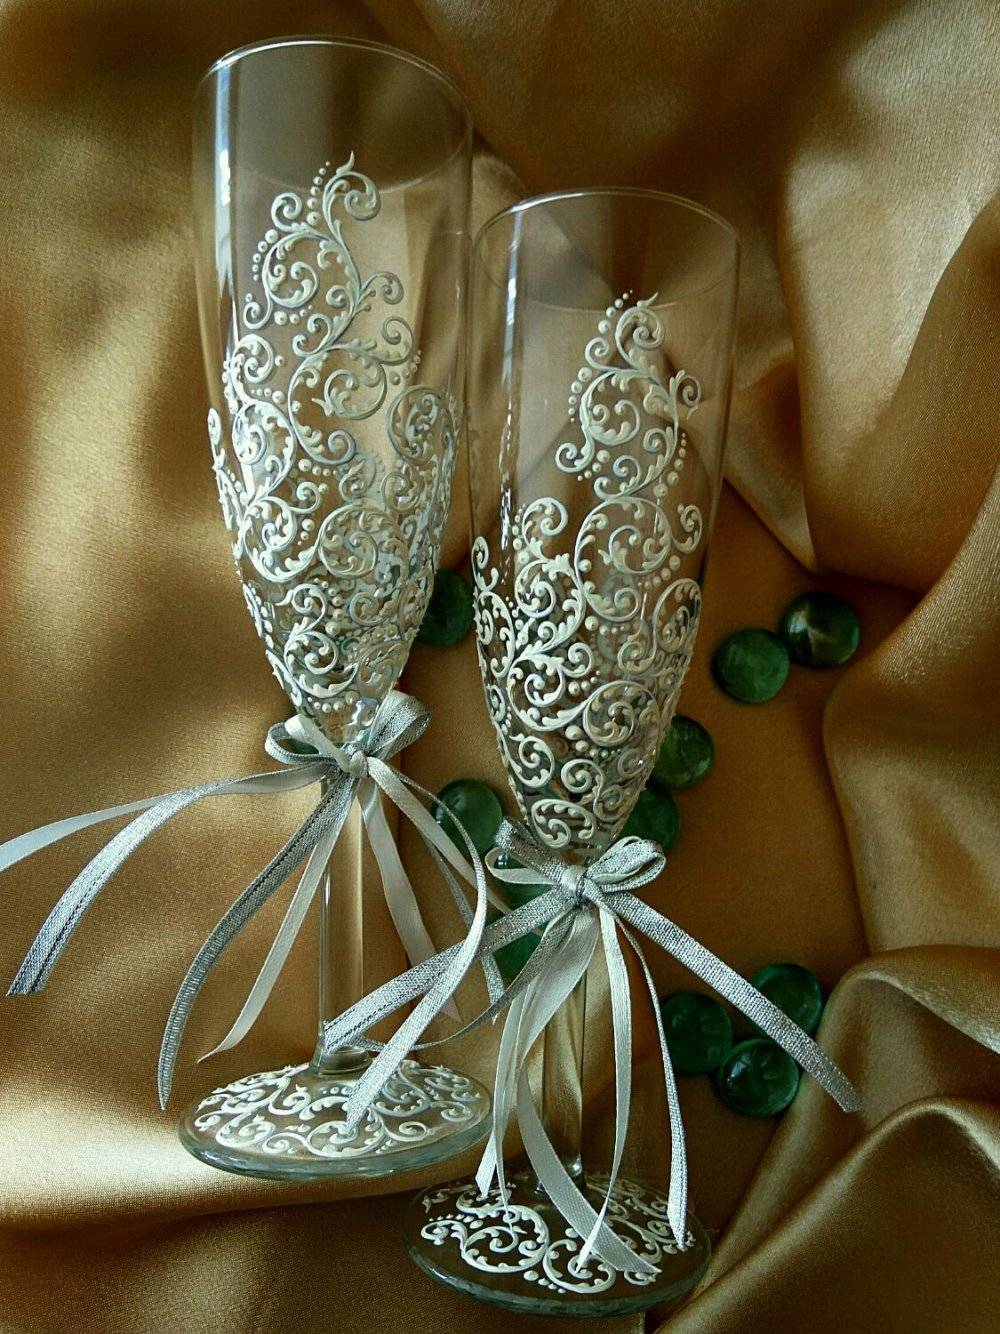 Свадебные бокалы своими руками - необходимые материалы и инструменты, пошаговая инструкция для декорирования своими руками + фото лучших примеров